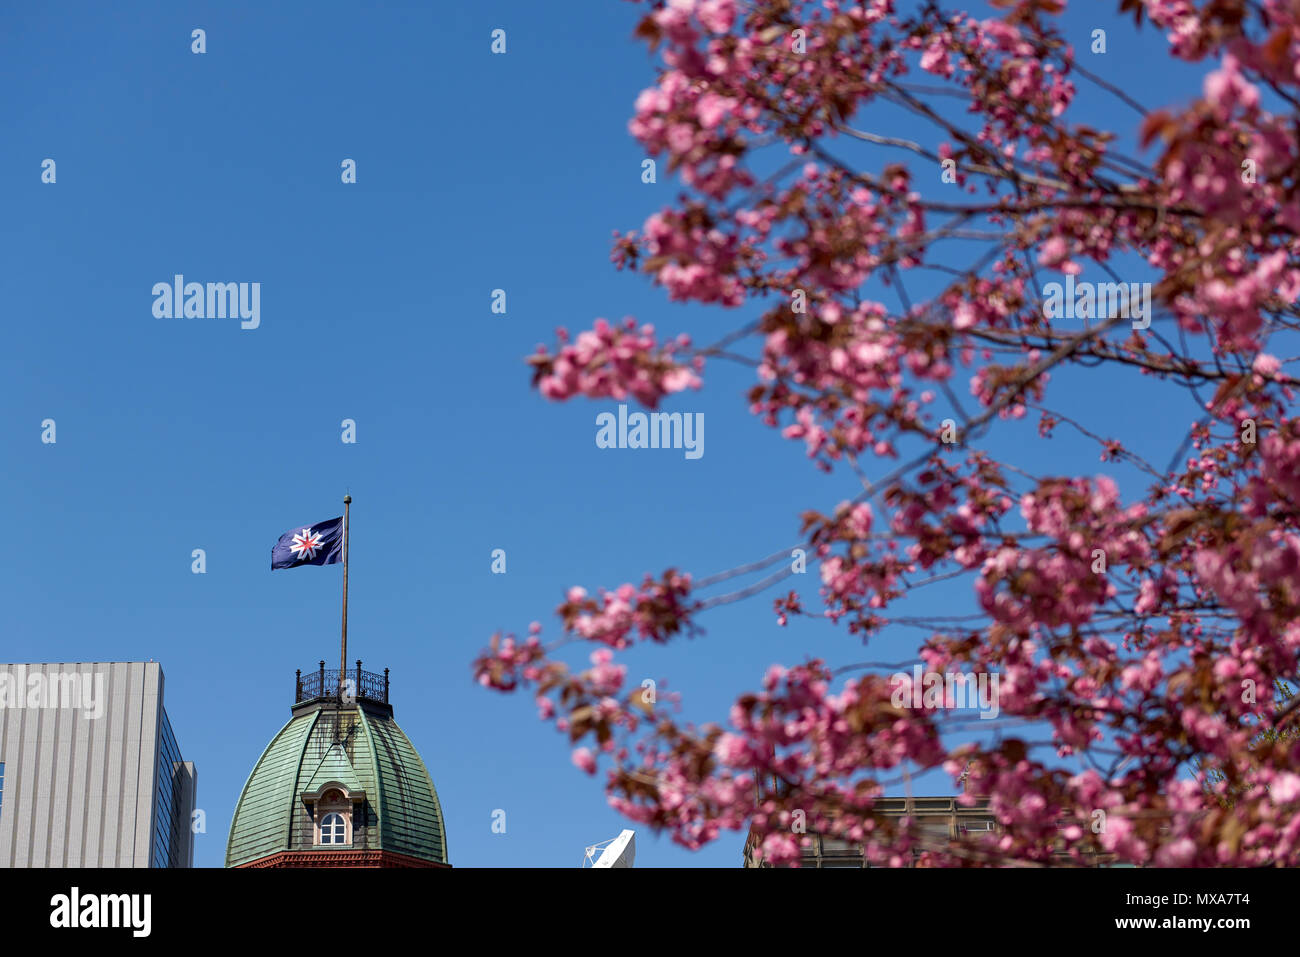 Japan Hokkaido Region Flag im Fokus schwanken auf Sapporo die fruehere Bundesregierung Gebäude, umrahmt von out-of-focus Kirschblüten im Vordergrund. Stockfoto